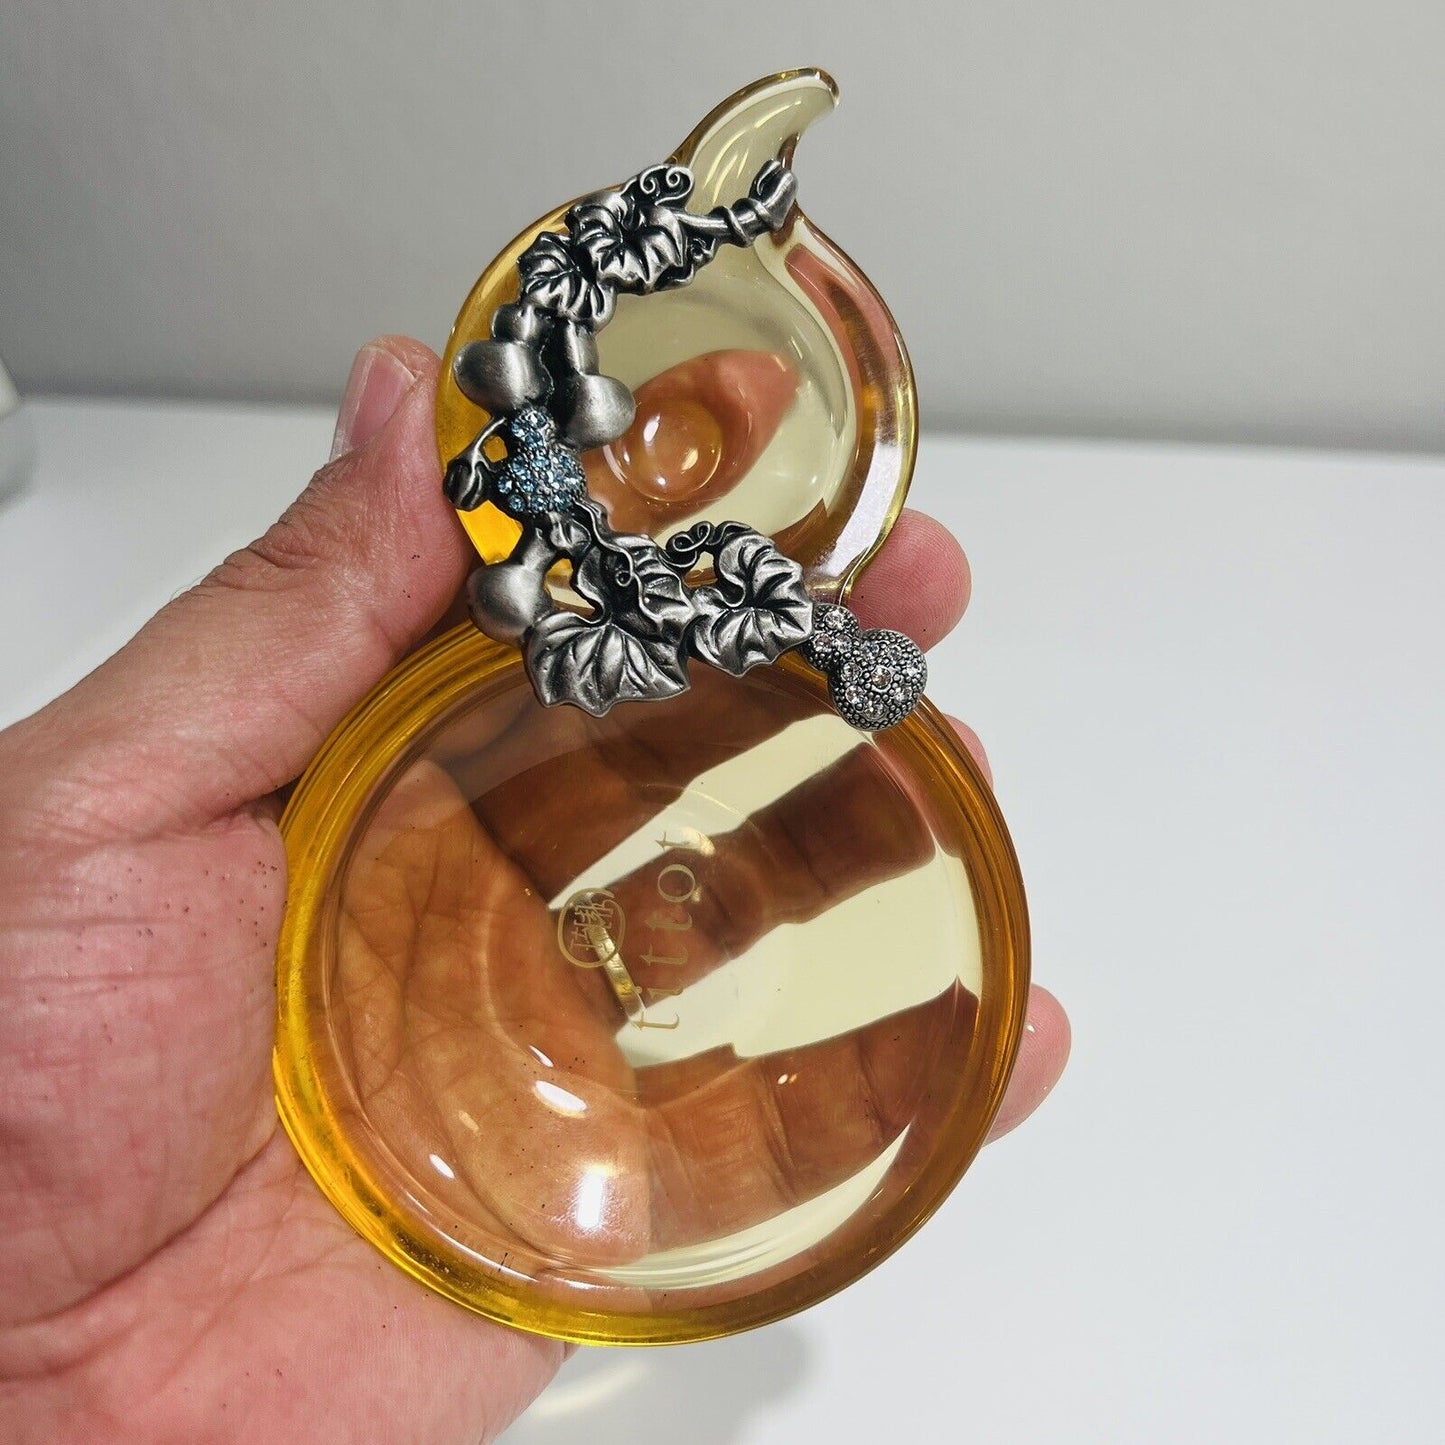 TiTToT Pear Dish Plentiful Harvest Amber Decorative Metal Trinket Taiwan Glass